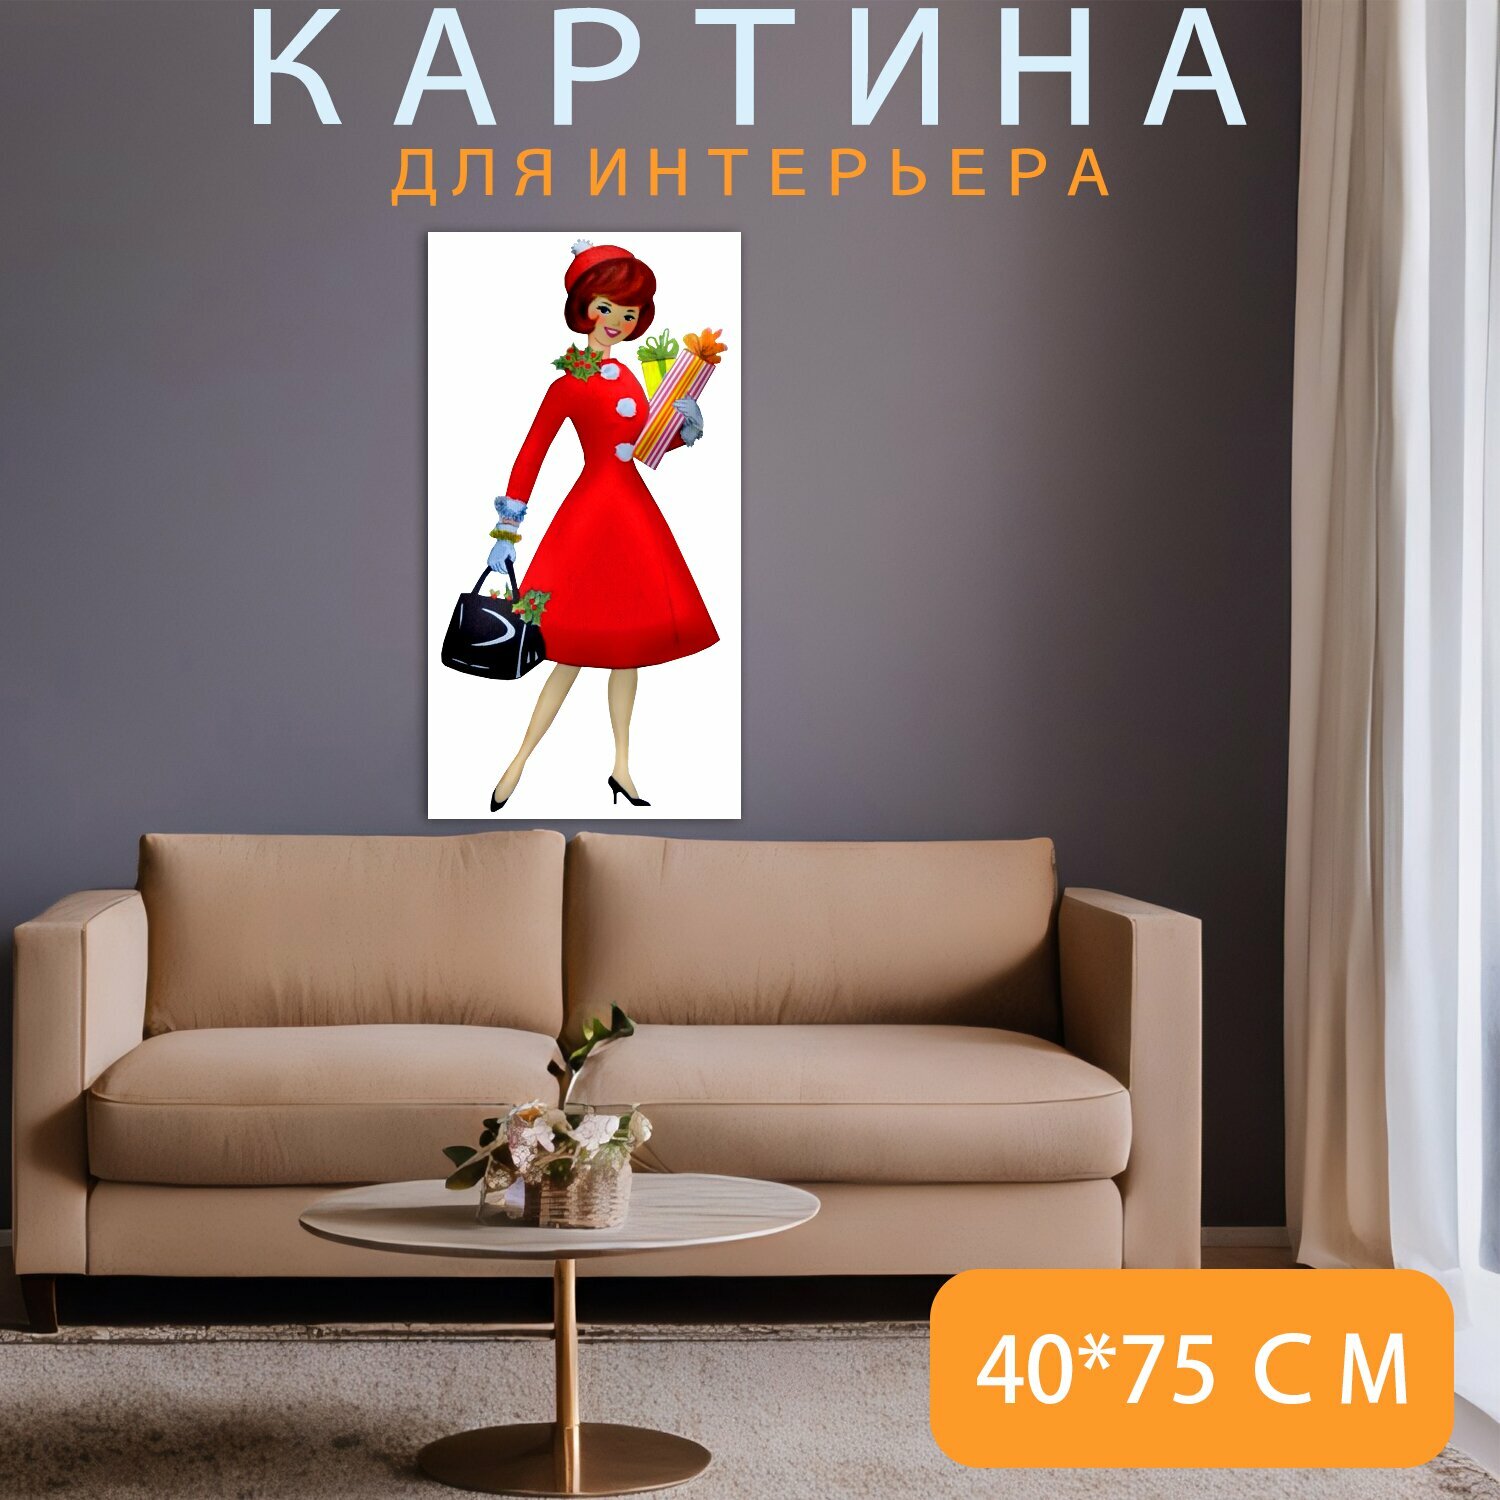 Картина на холсте "Женщина, платье, подарки" на подрамнике 40х75 см. для интерьера